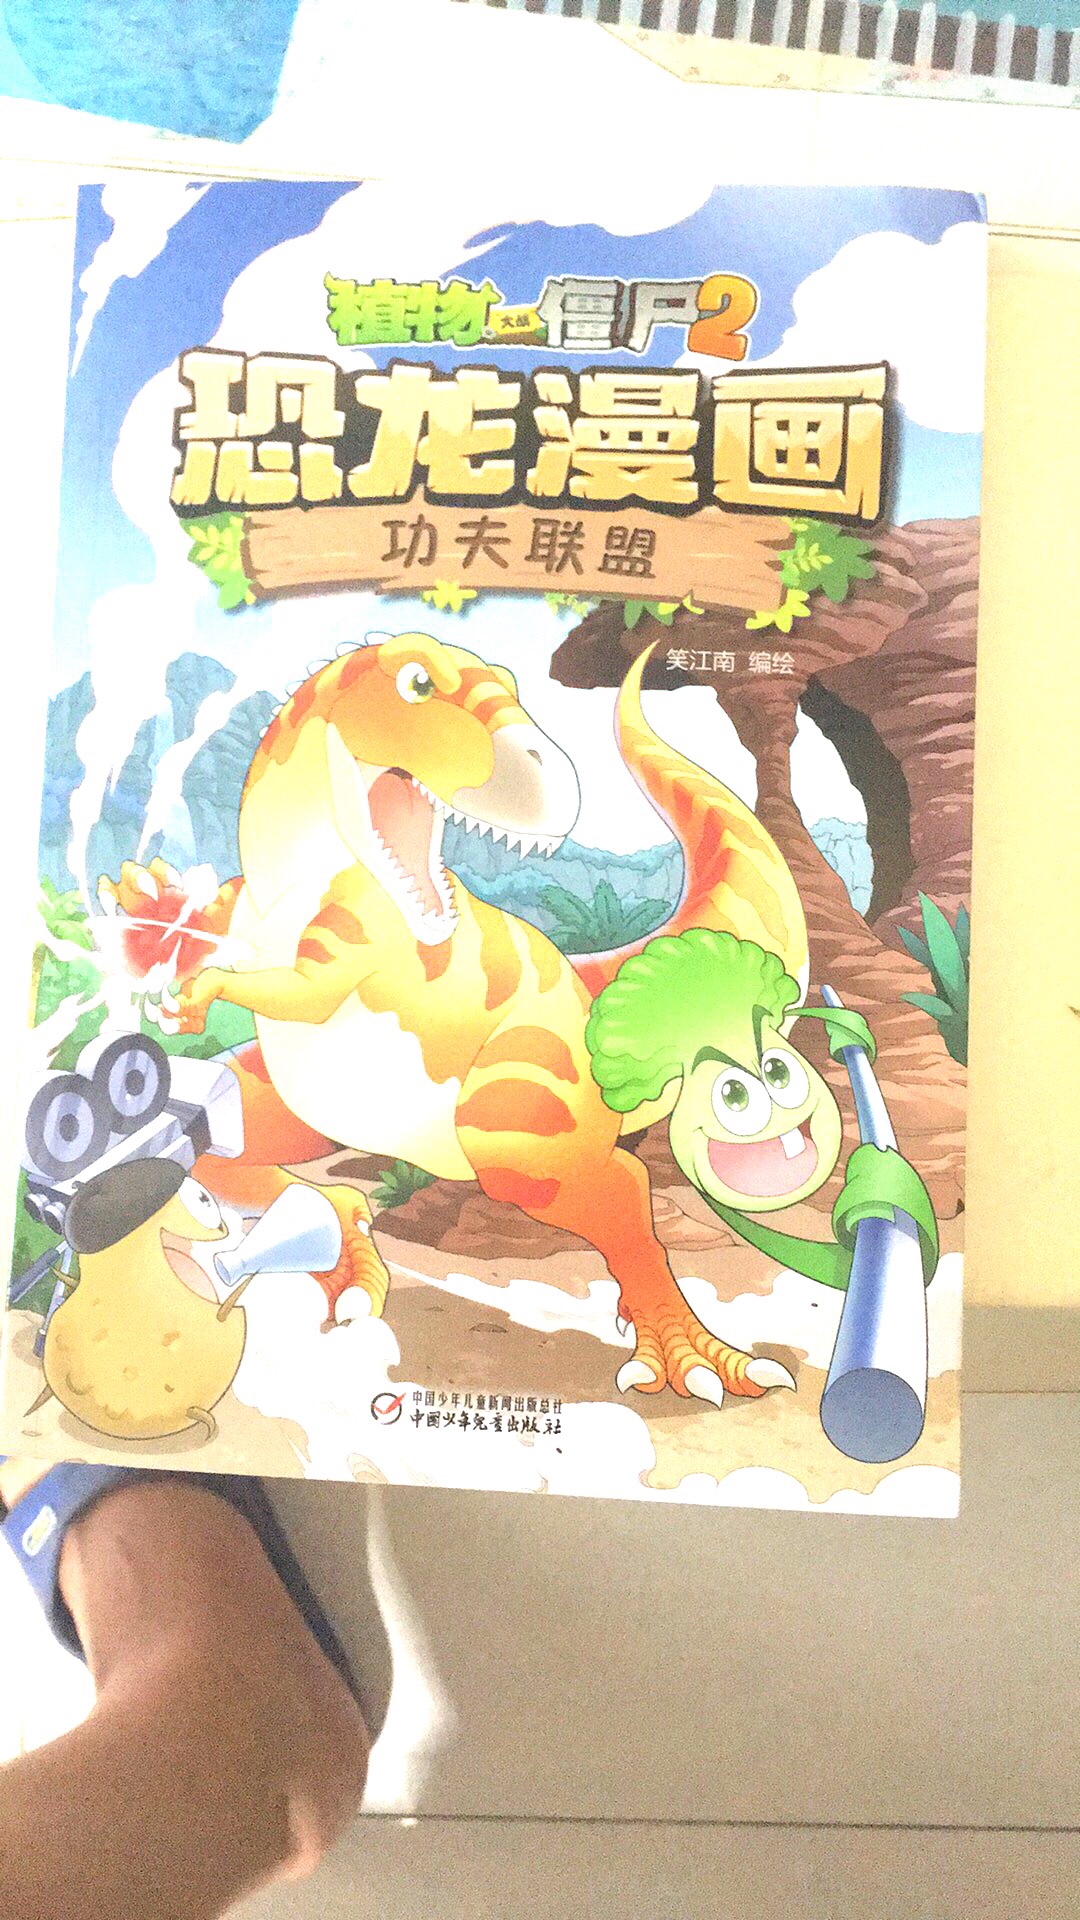 恐龙漫画公主联盟，中国少年儿童新闻出版总社出版。